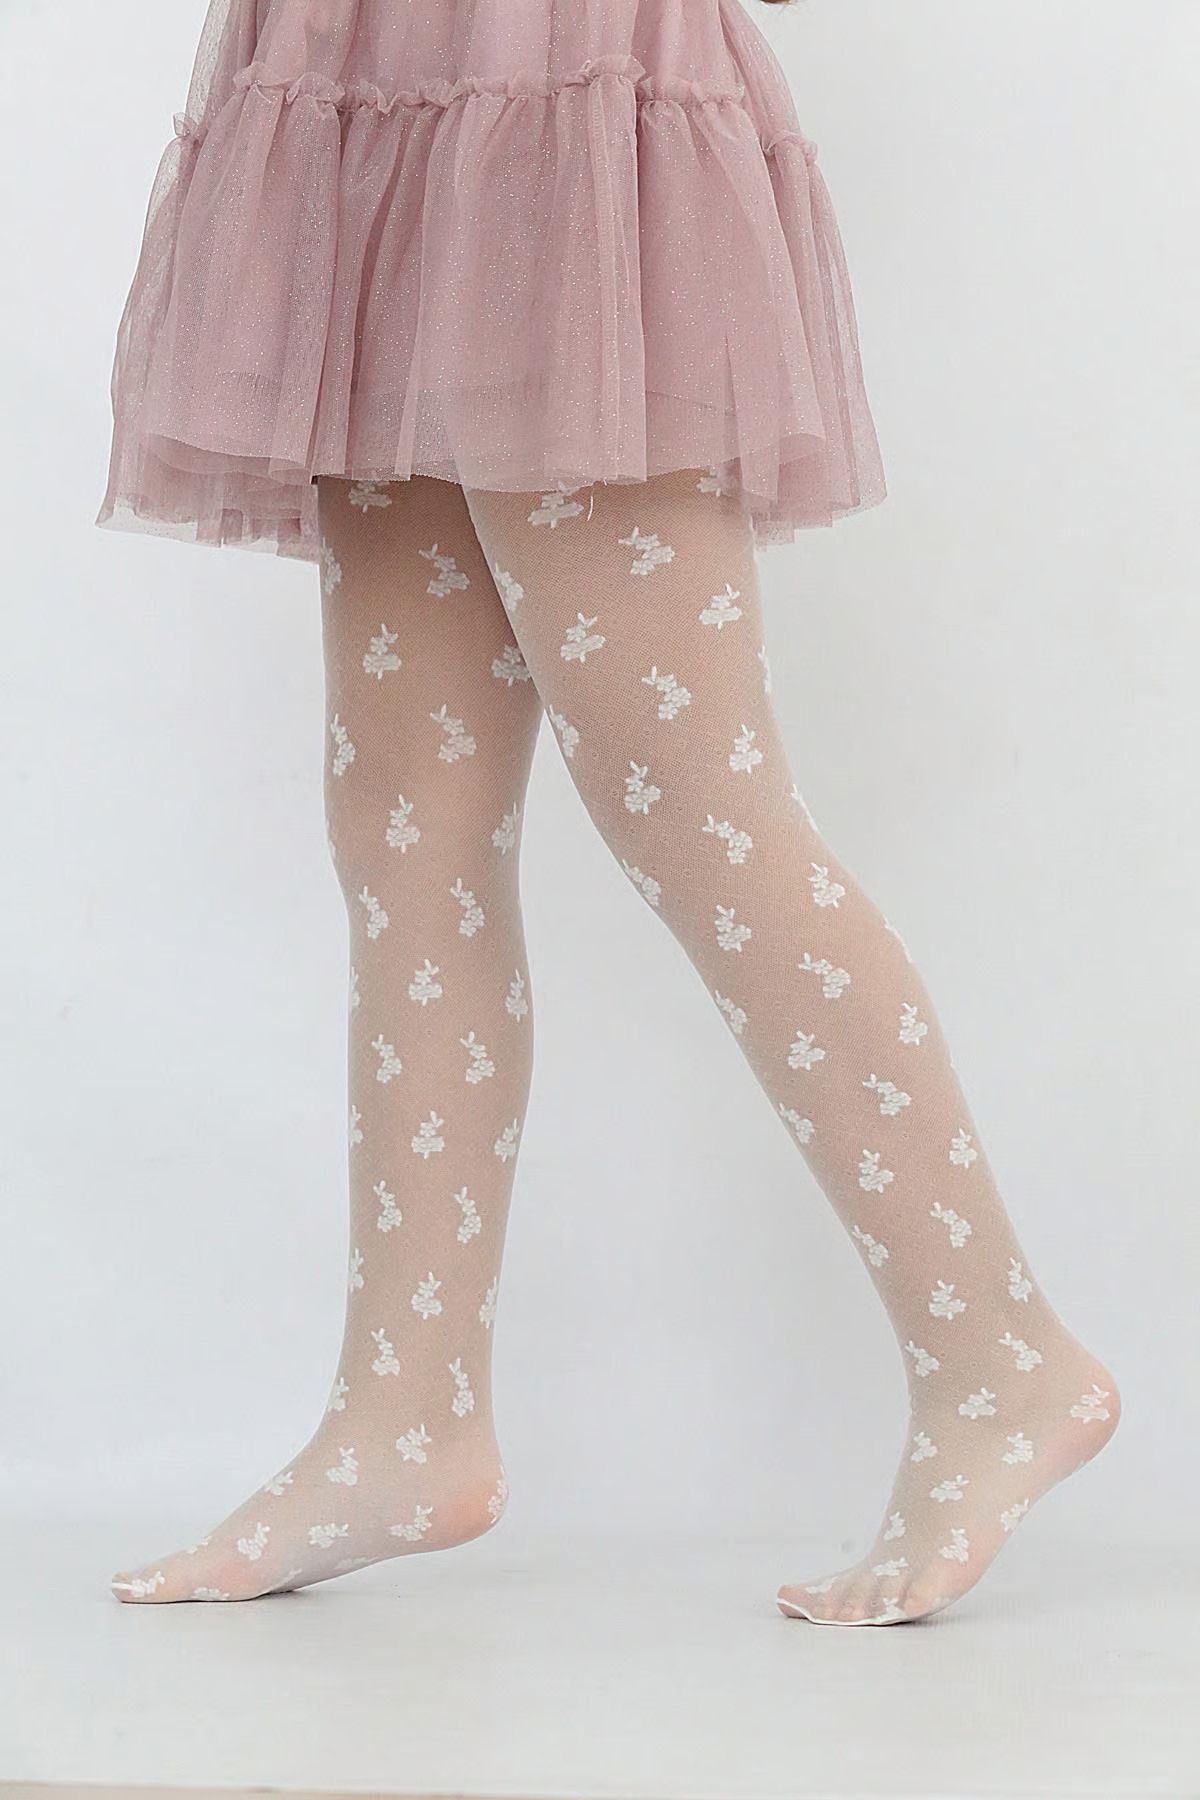 Daymod Kız Çocuk Damla Beyaz Desenli İnce Külotlu Çorap